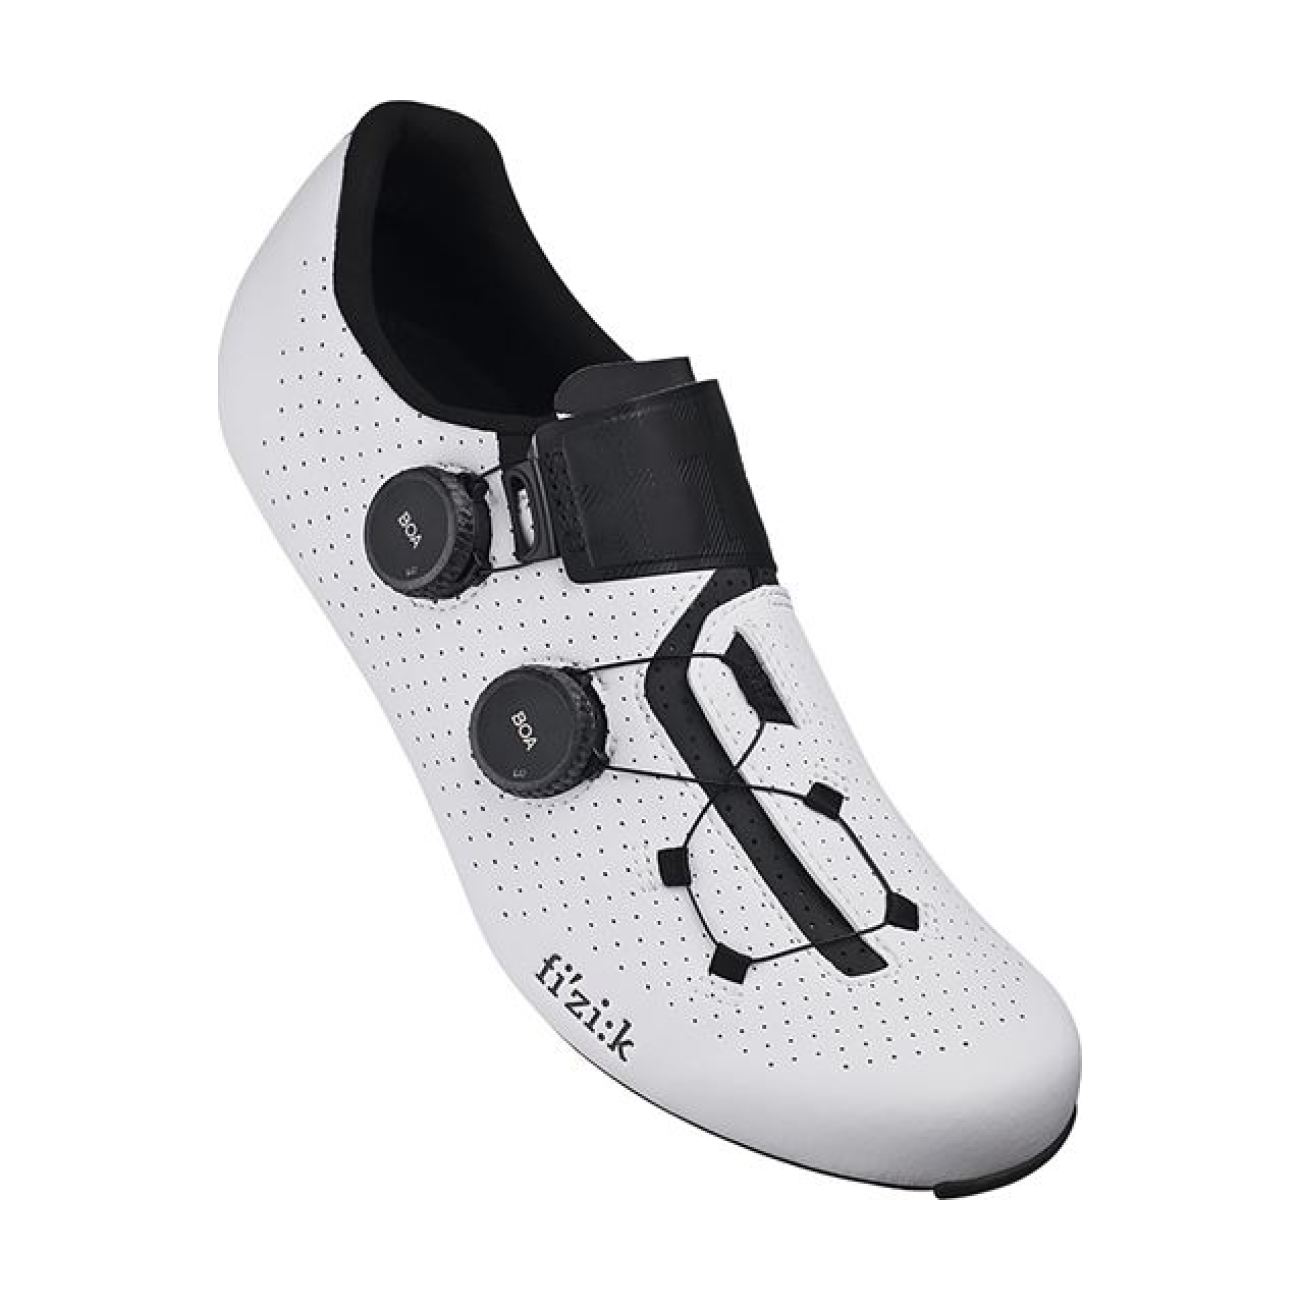 FIZIK Kerékpáros Cipő - INFINITO CARBON 2 - Fehér/fekete